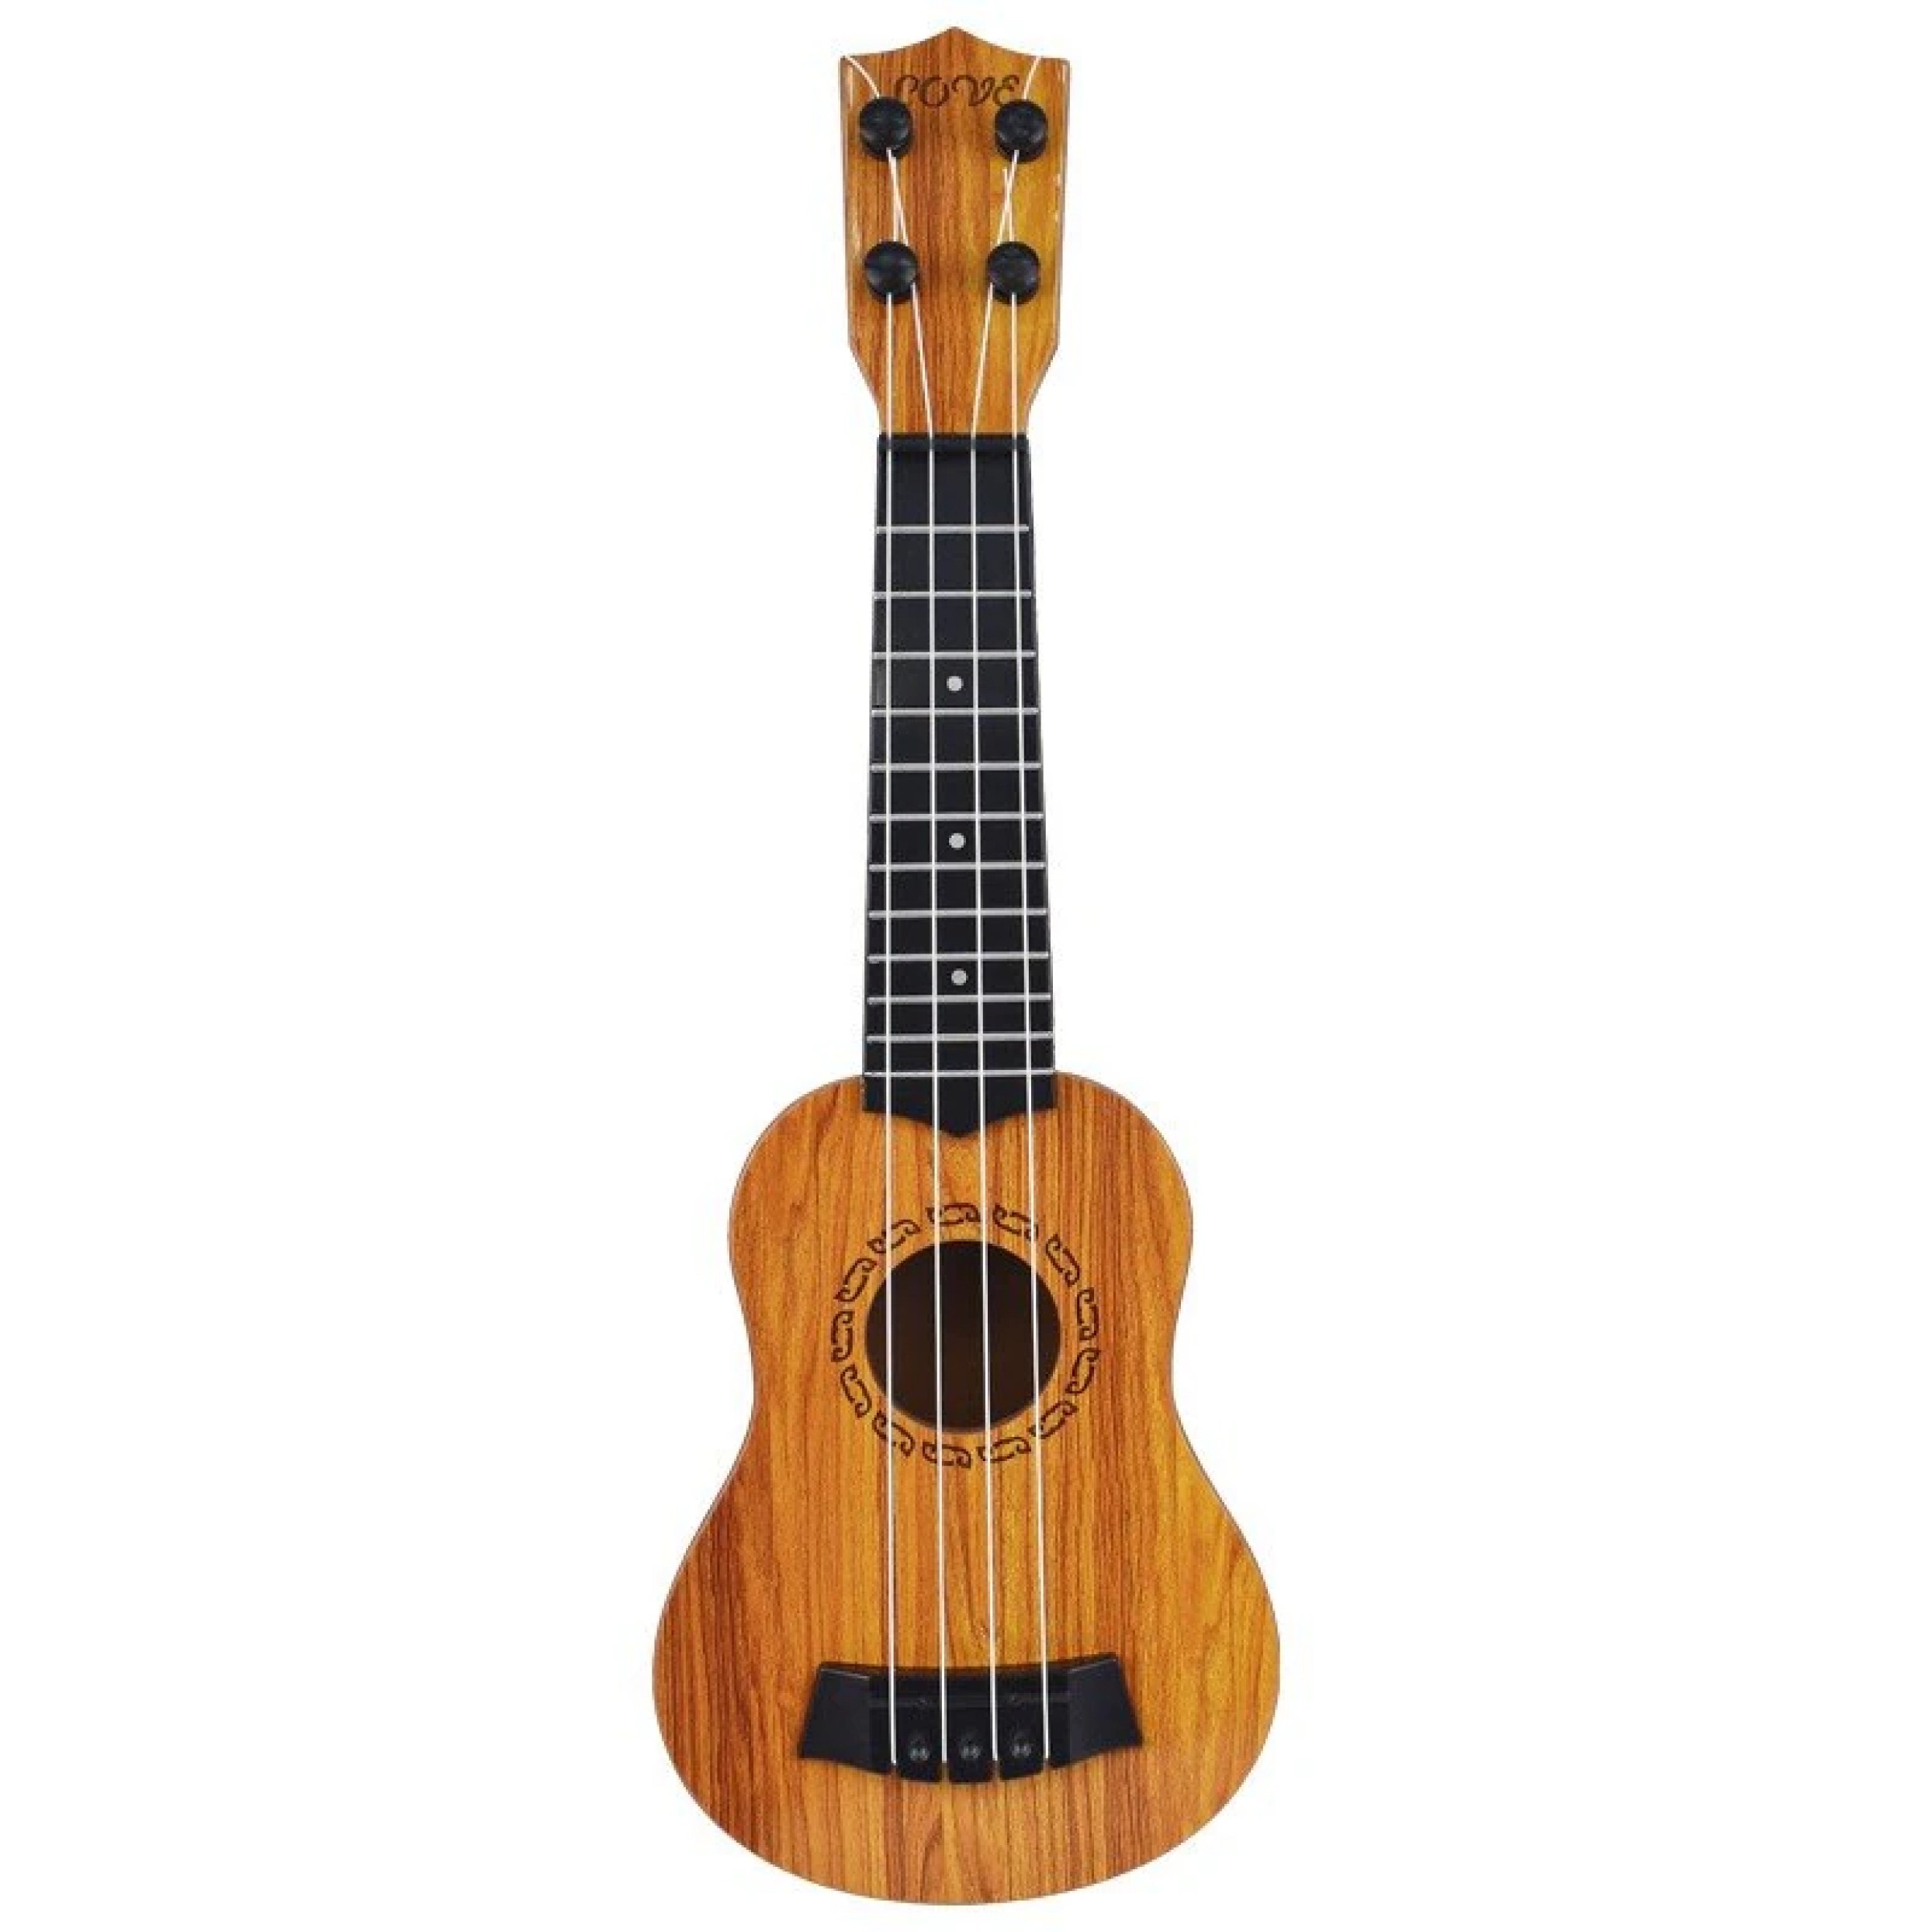 Музыкальная игрушка Гитара 35 см (пластик), Velice